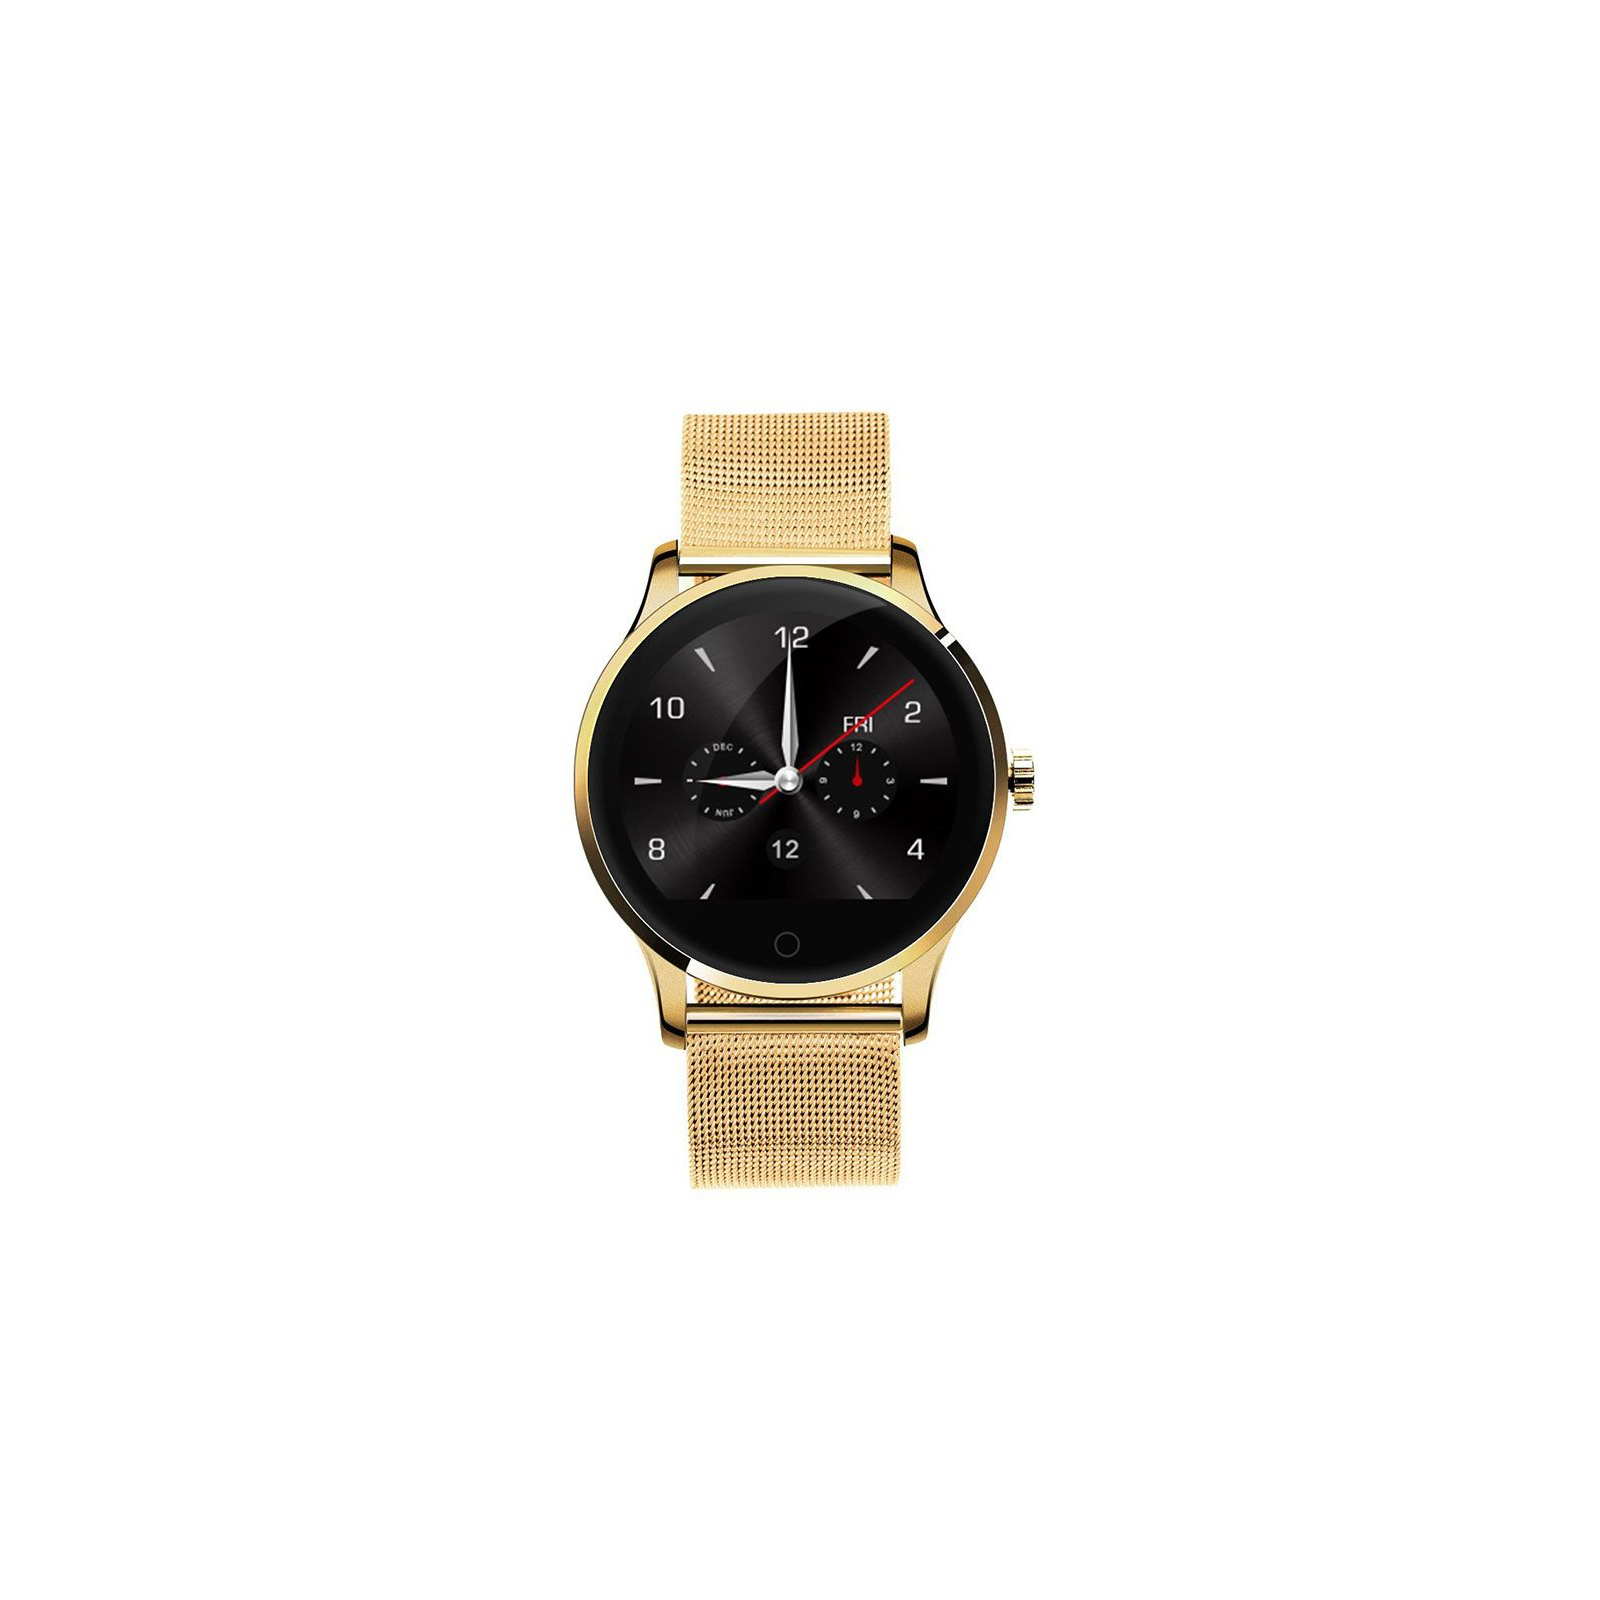 Смарт-часы UWatch K88H Brown Leather Strap (F_59769)